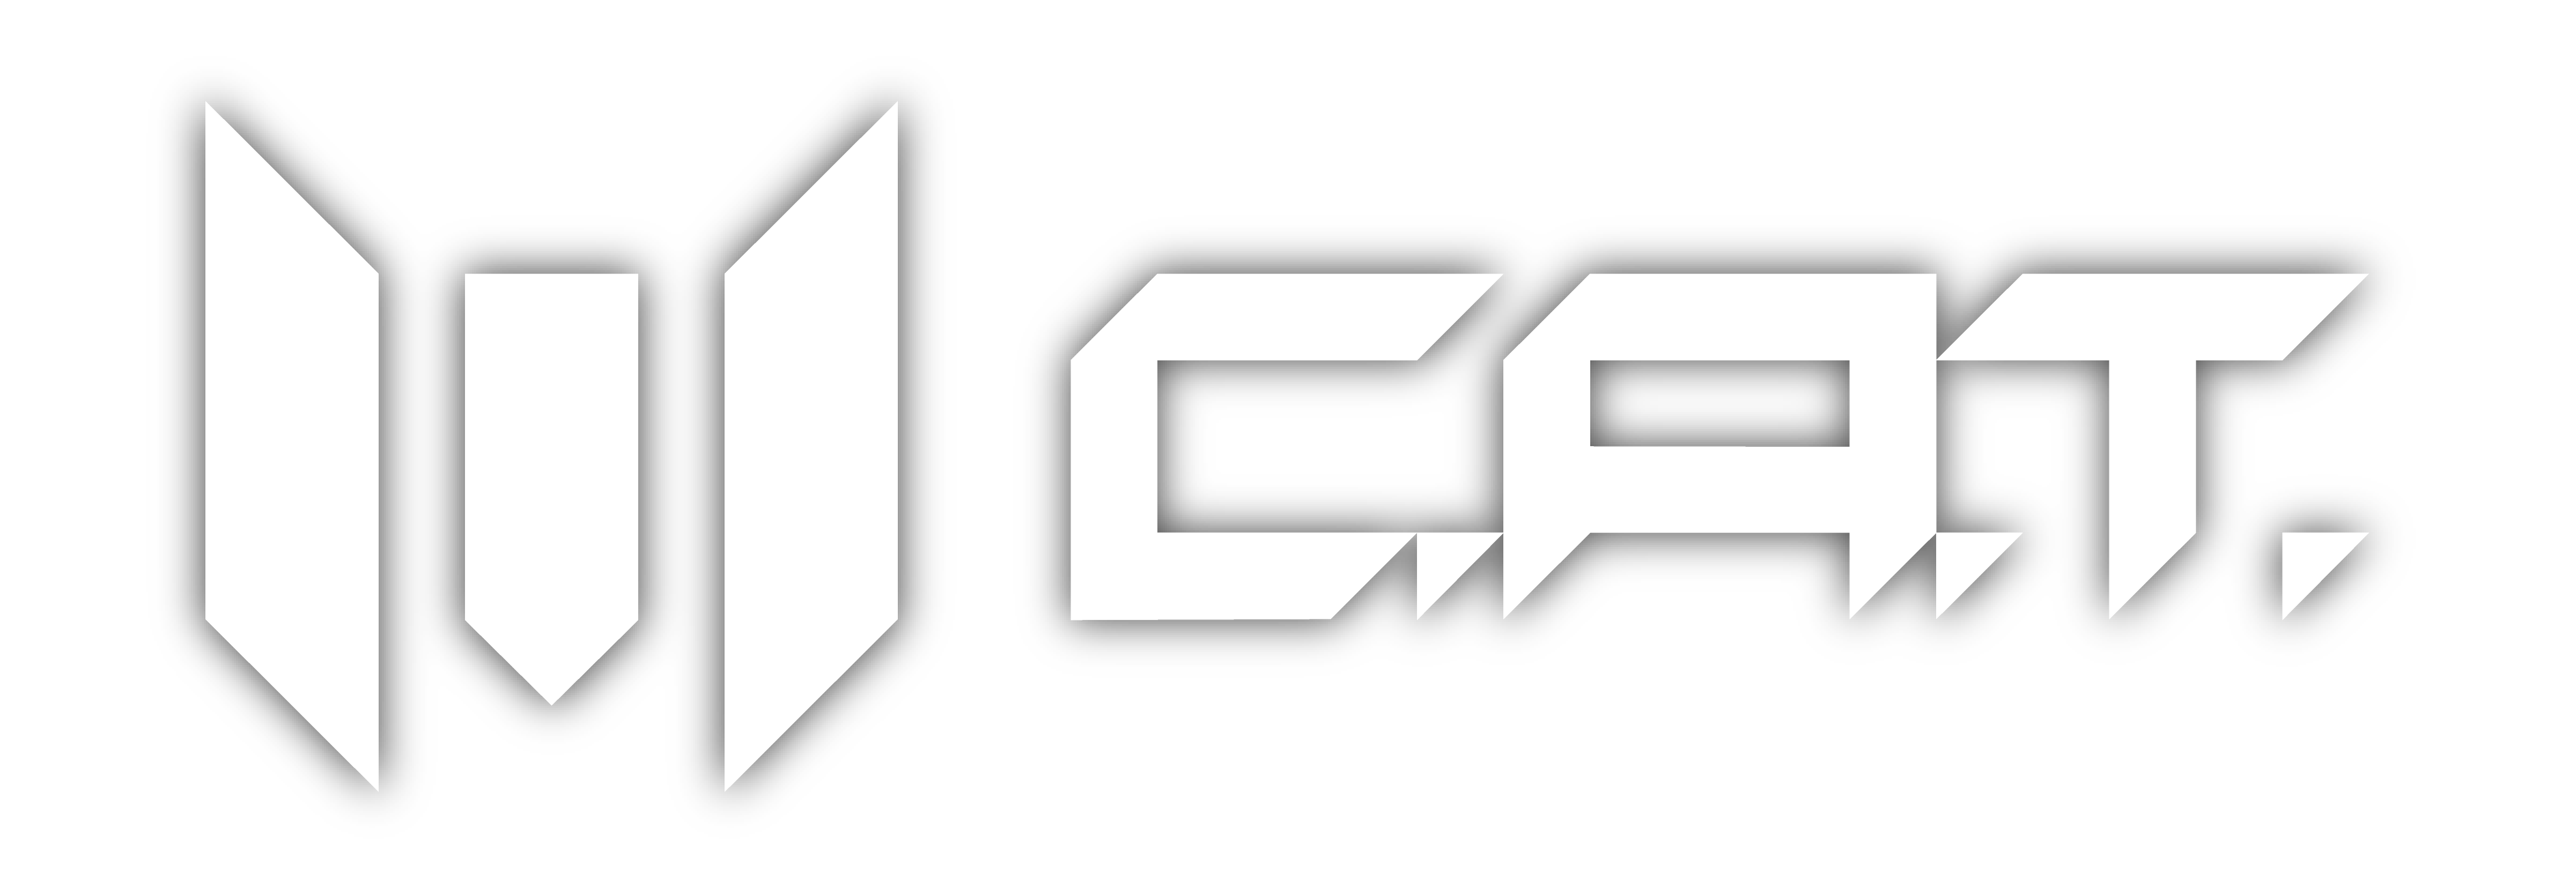 cat_logo